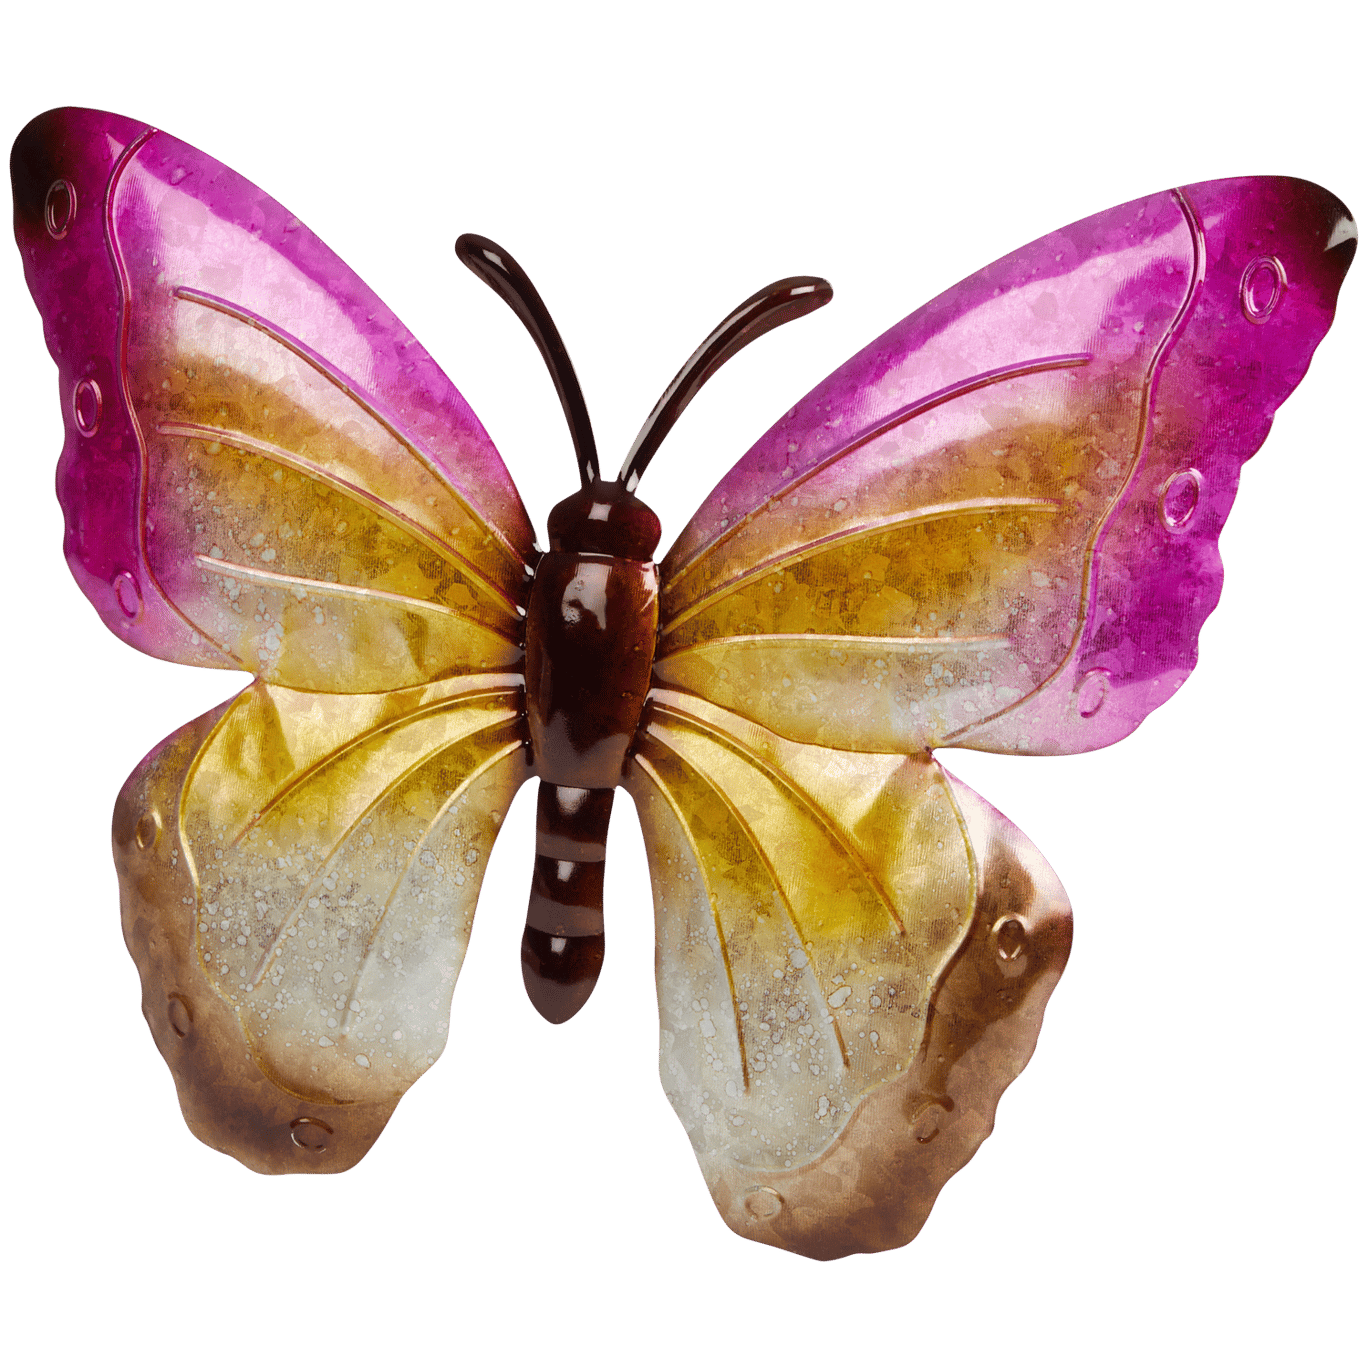 Dekorativní motýl